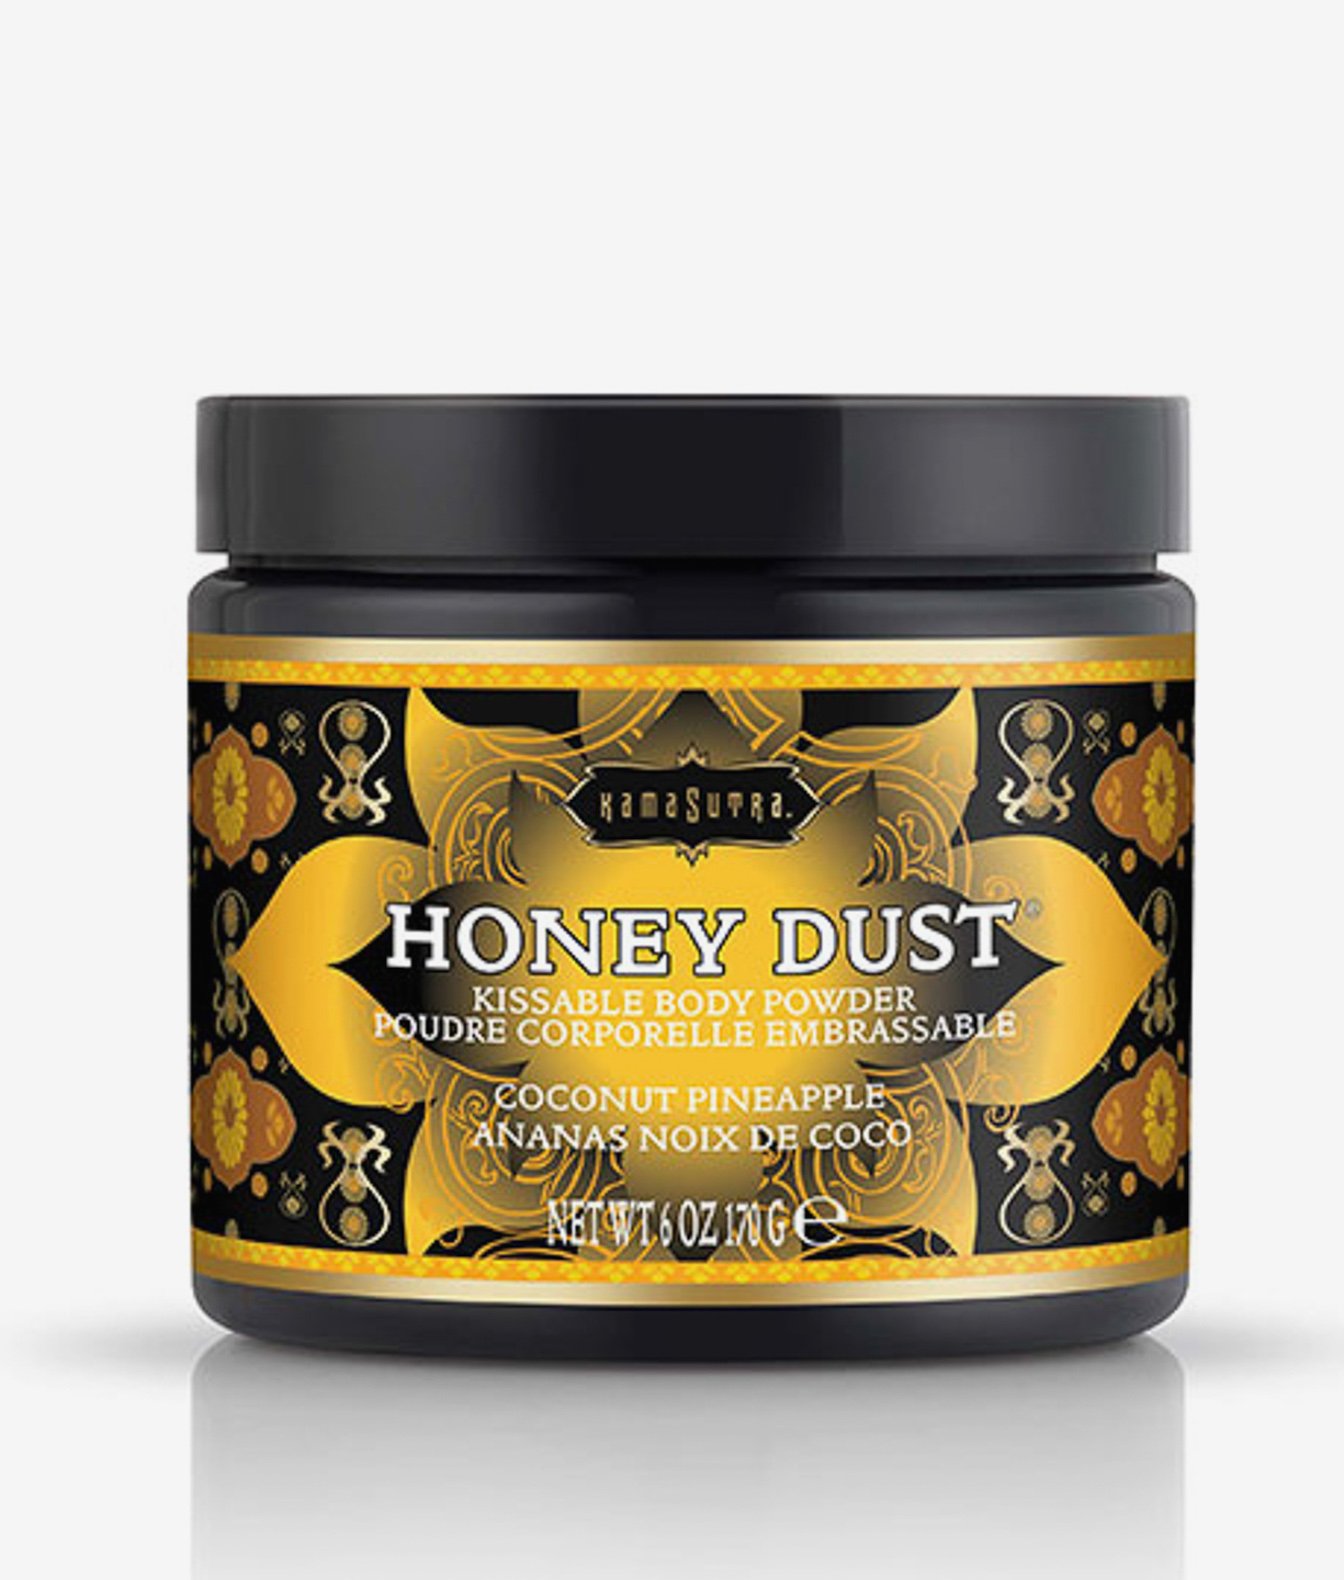 Kama Sutra Honey dust pyłek do gry wstępnej